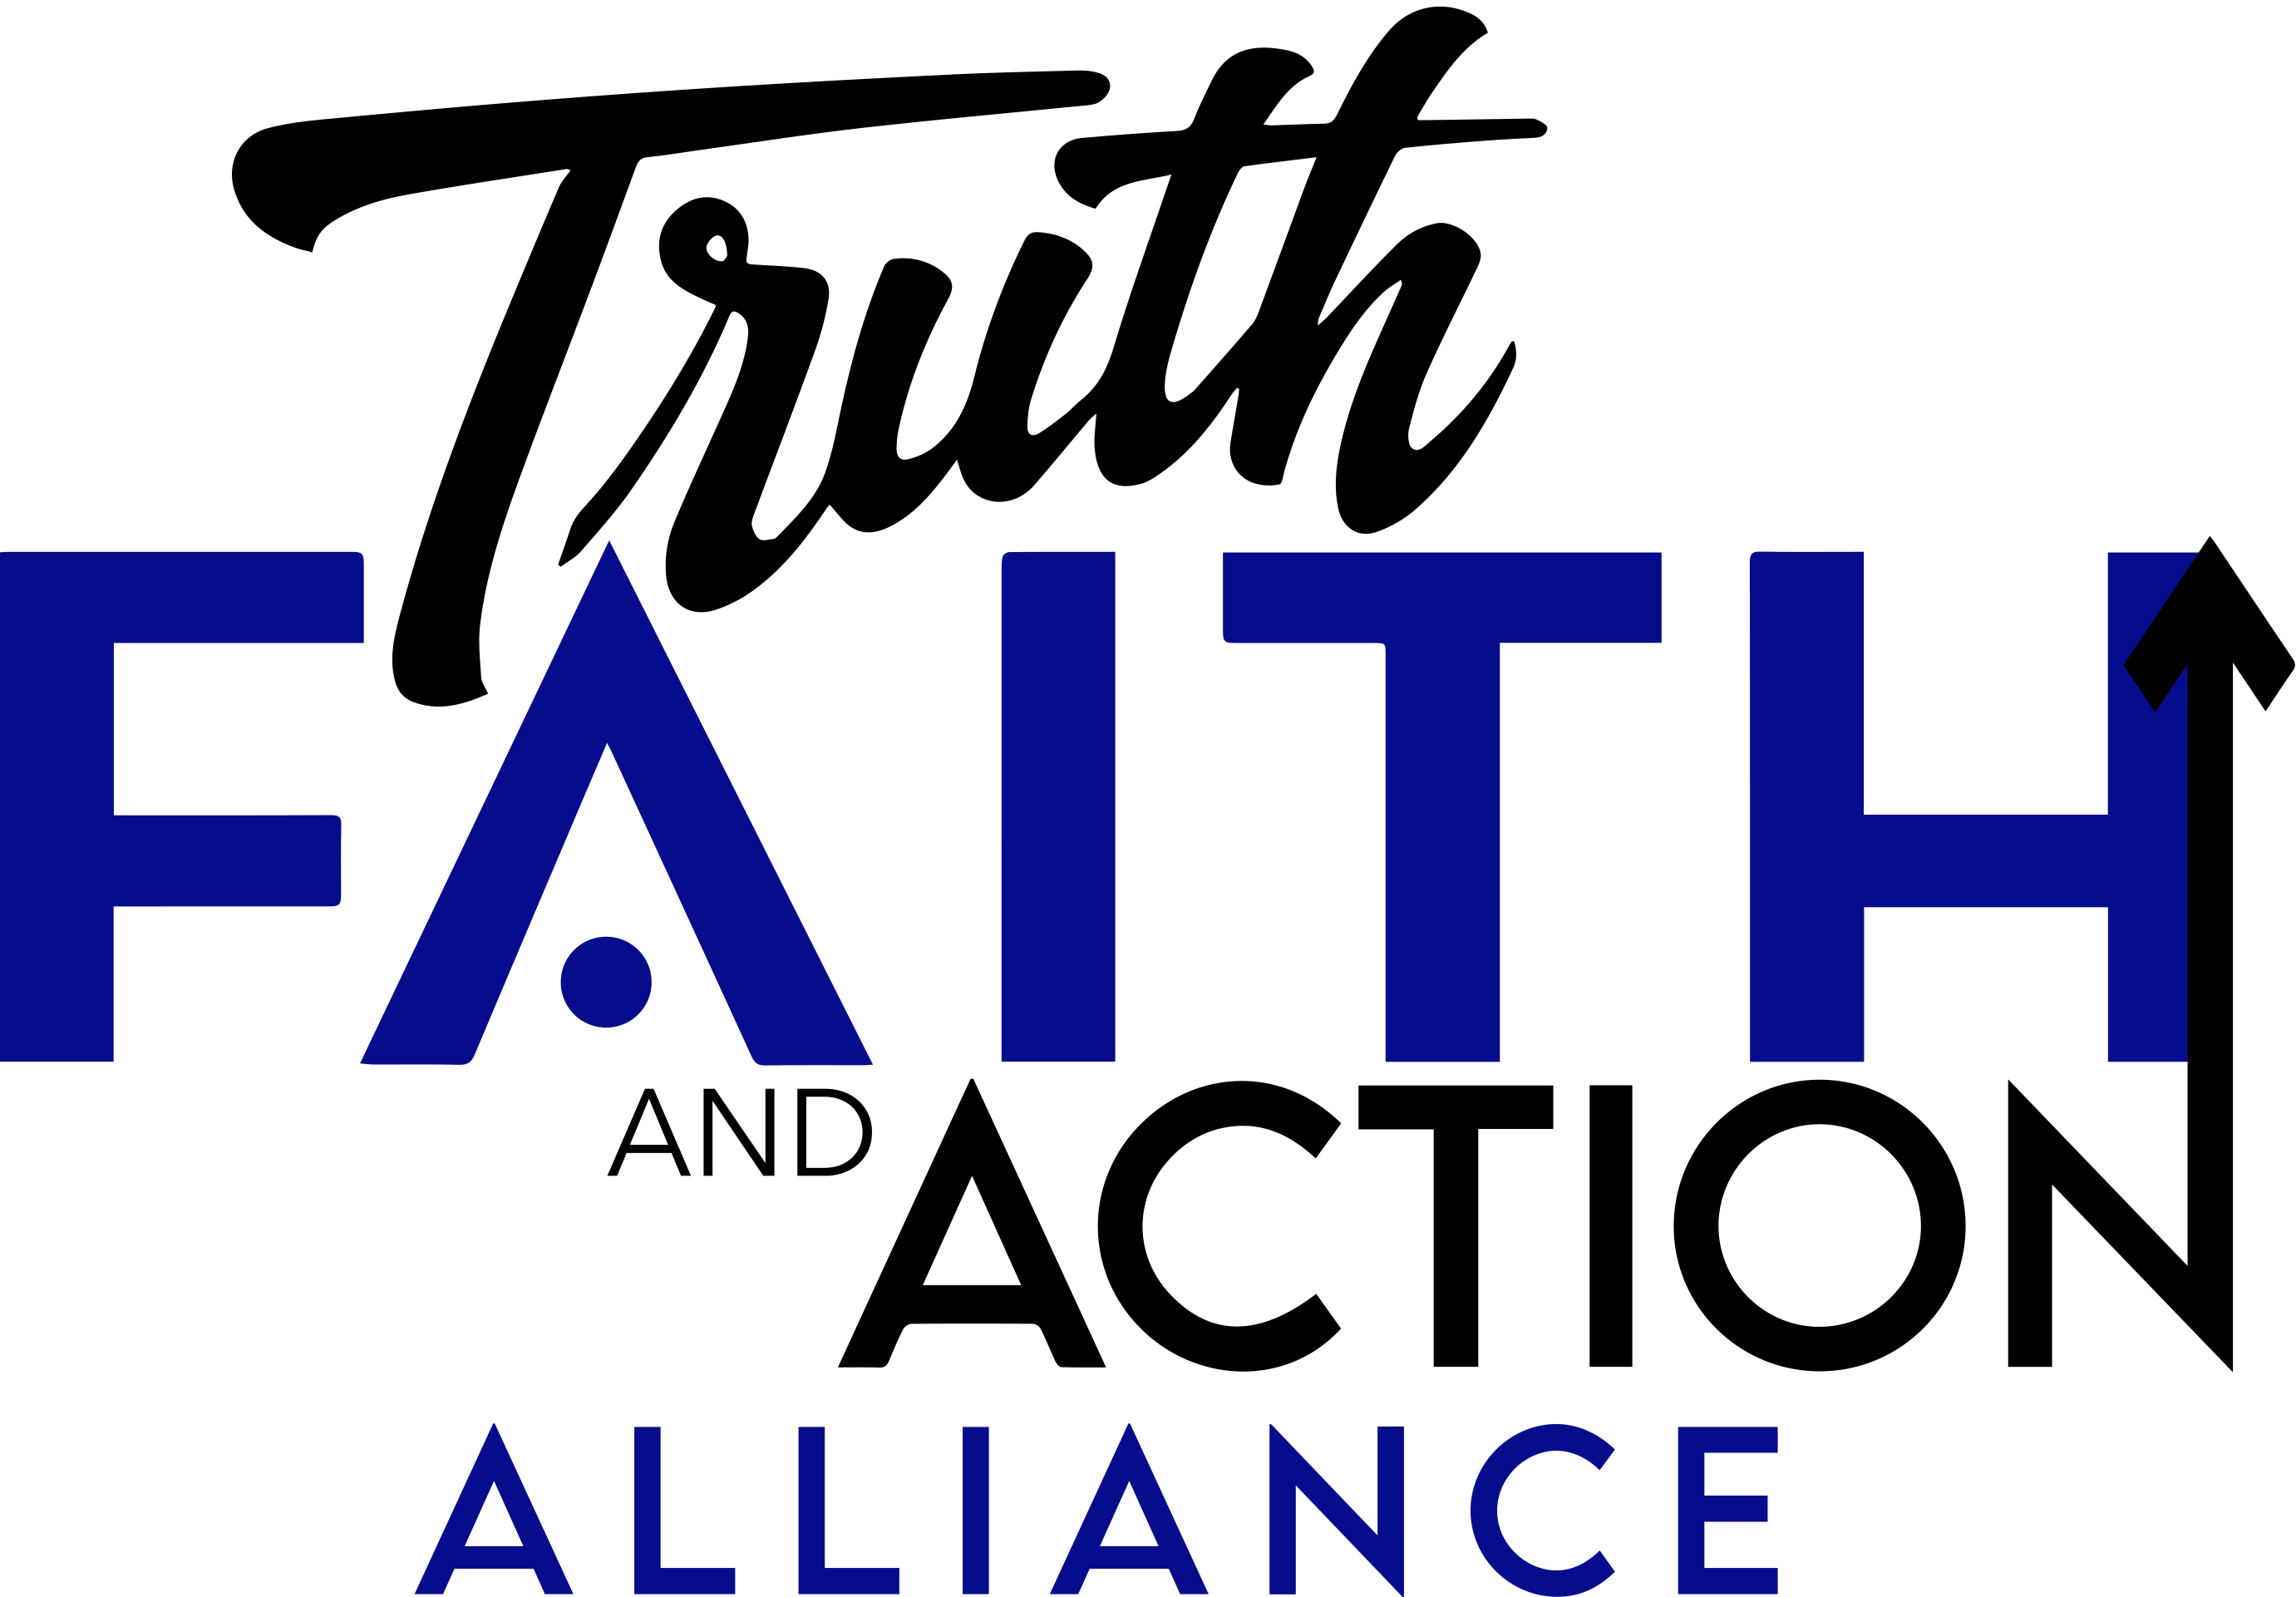 Faith Truth Action Alliance